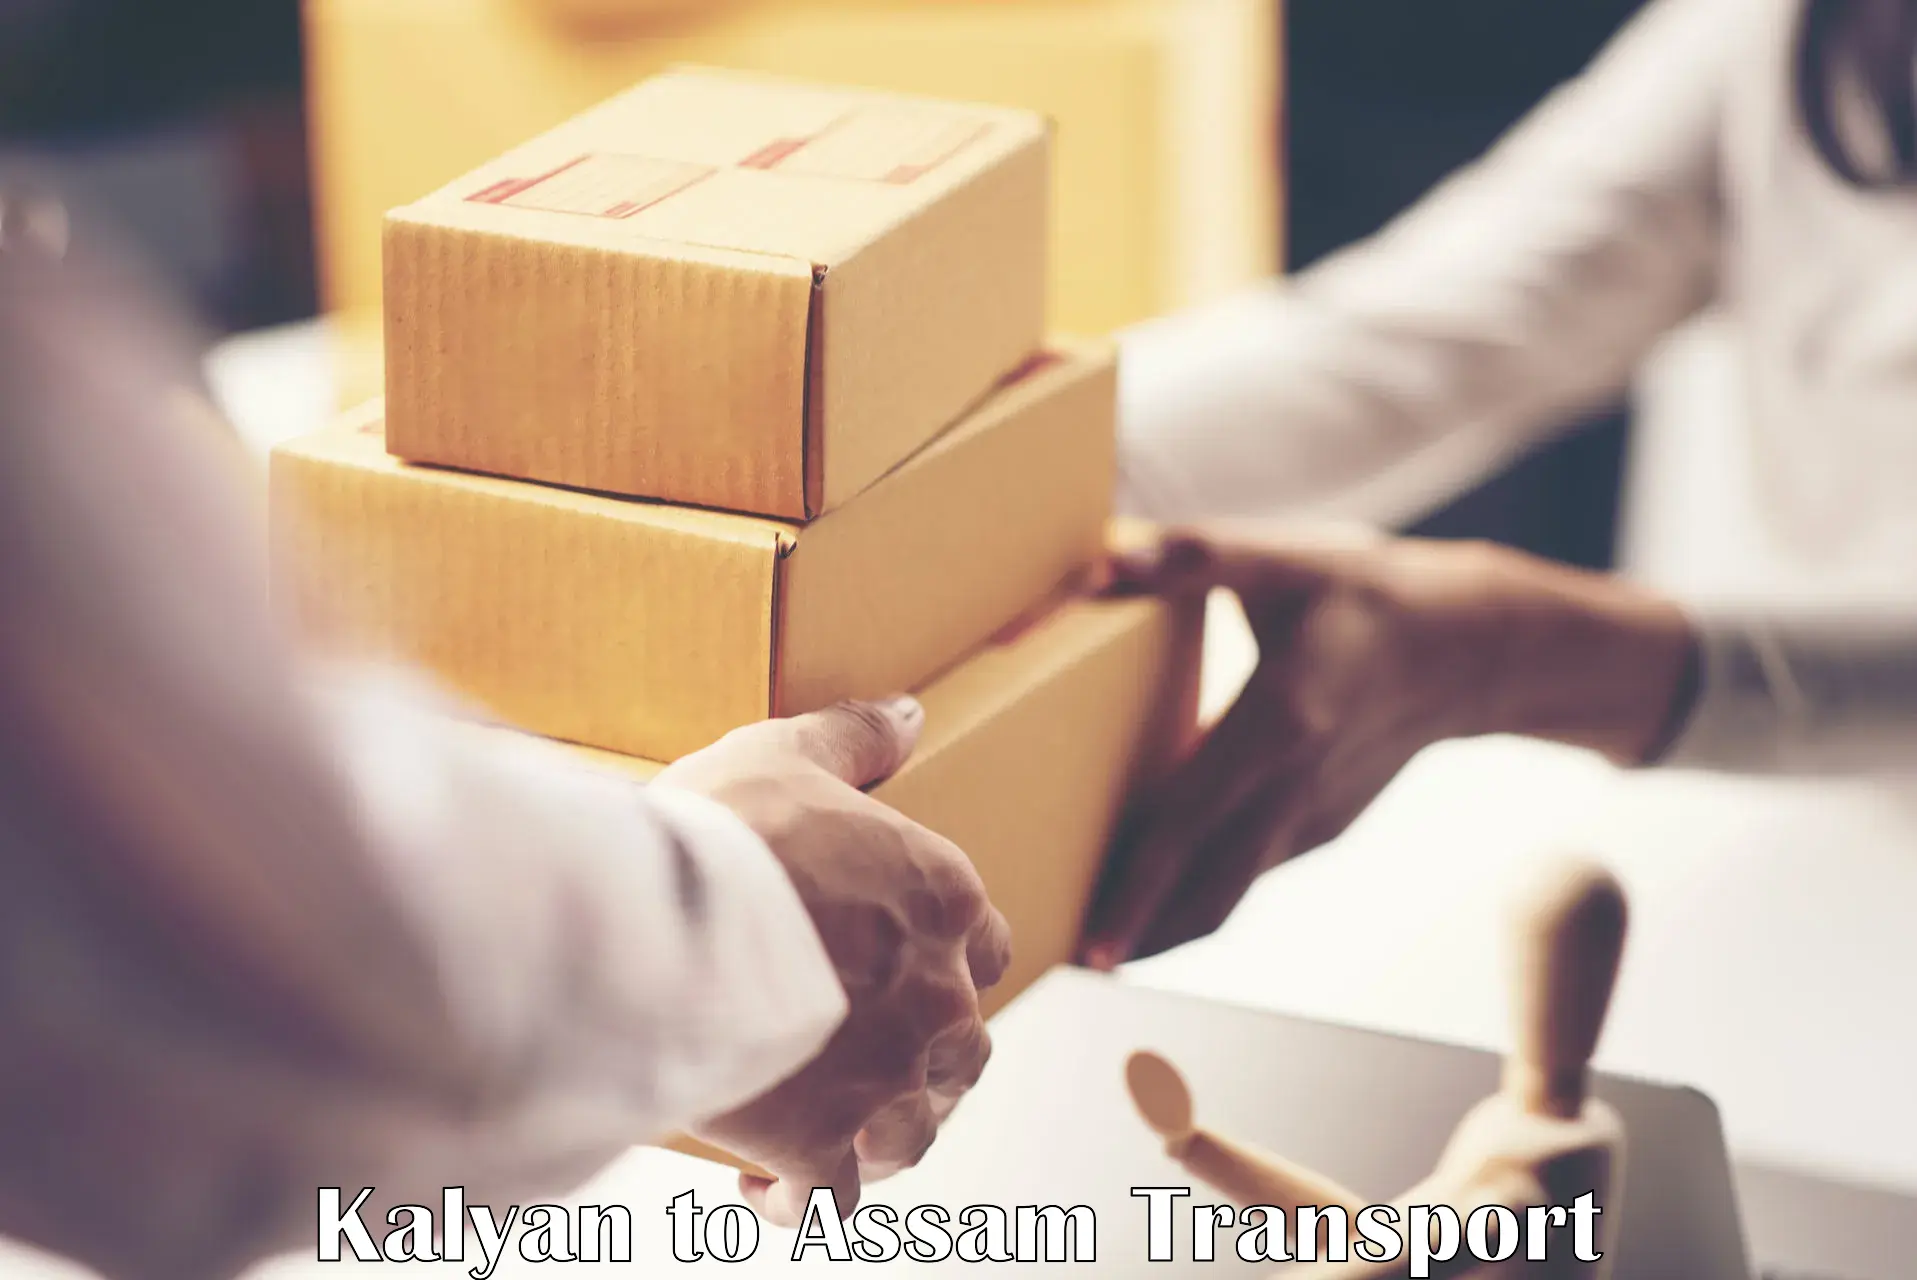 Furniture transport service Kalyan to Hailakandi